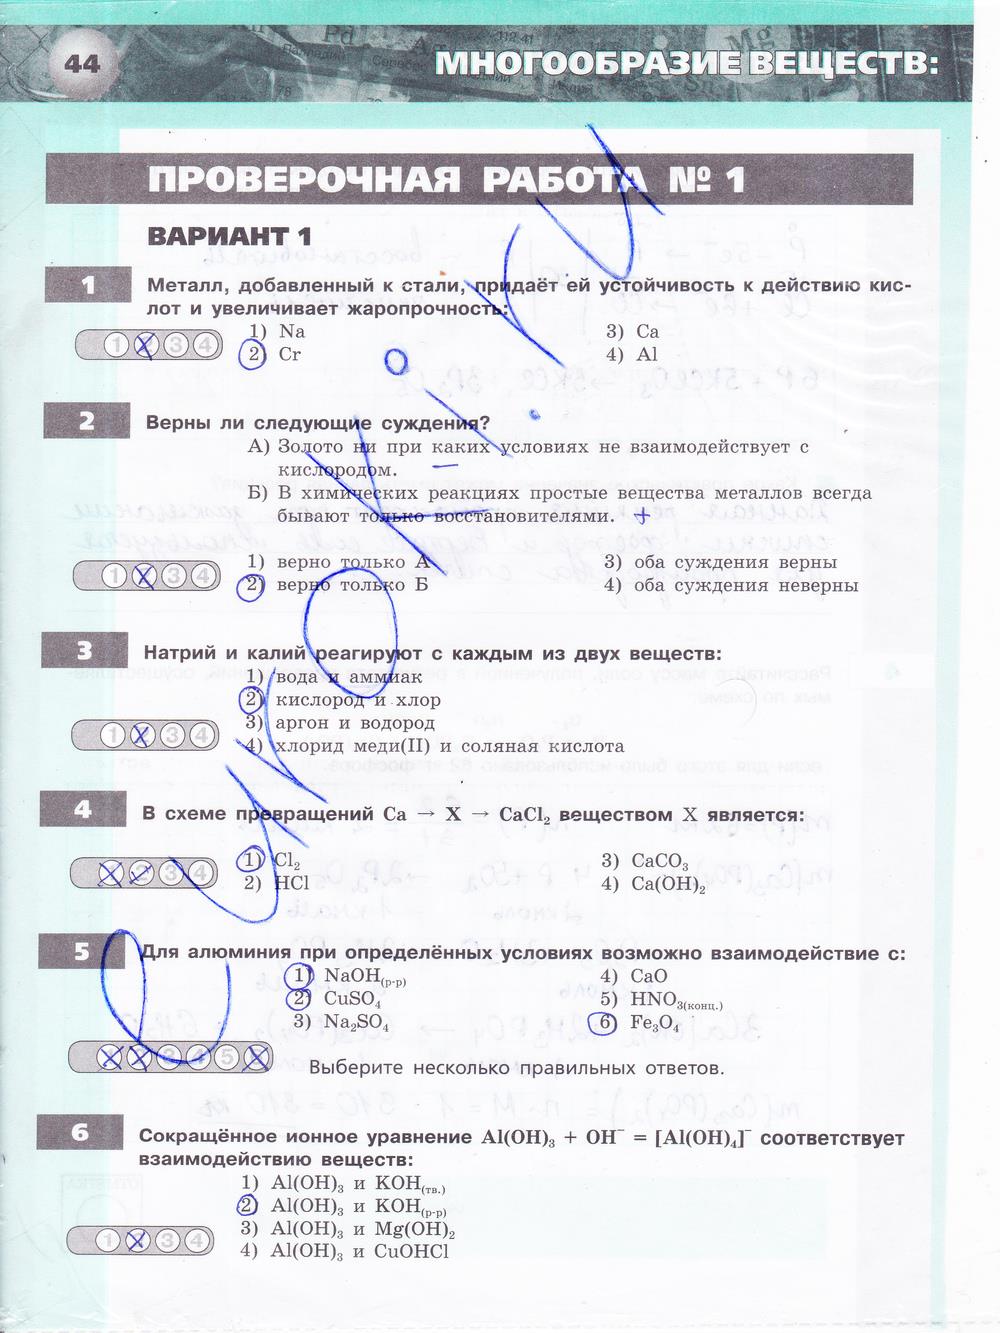 гдз 9 класс тетрадь-экзаменатор страница 44 химия Бобылева, Бирюлина